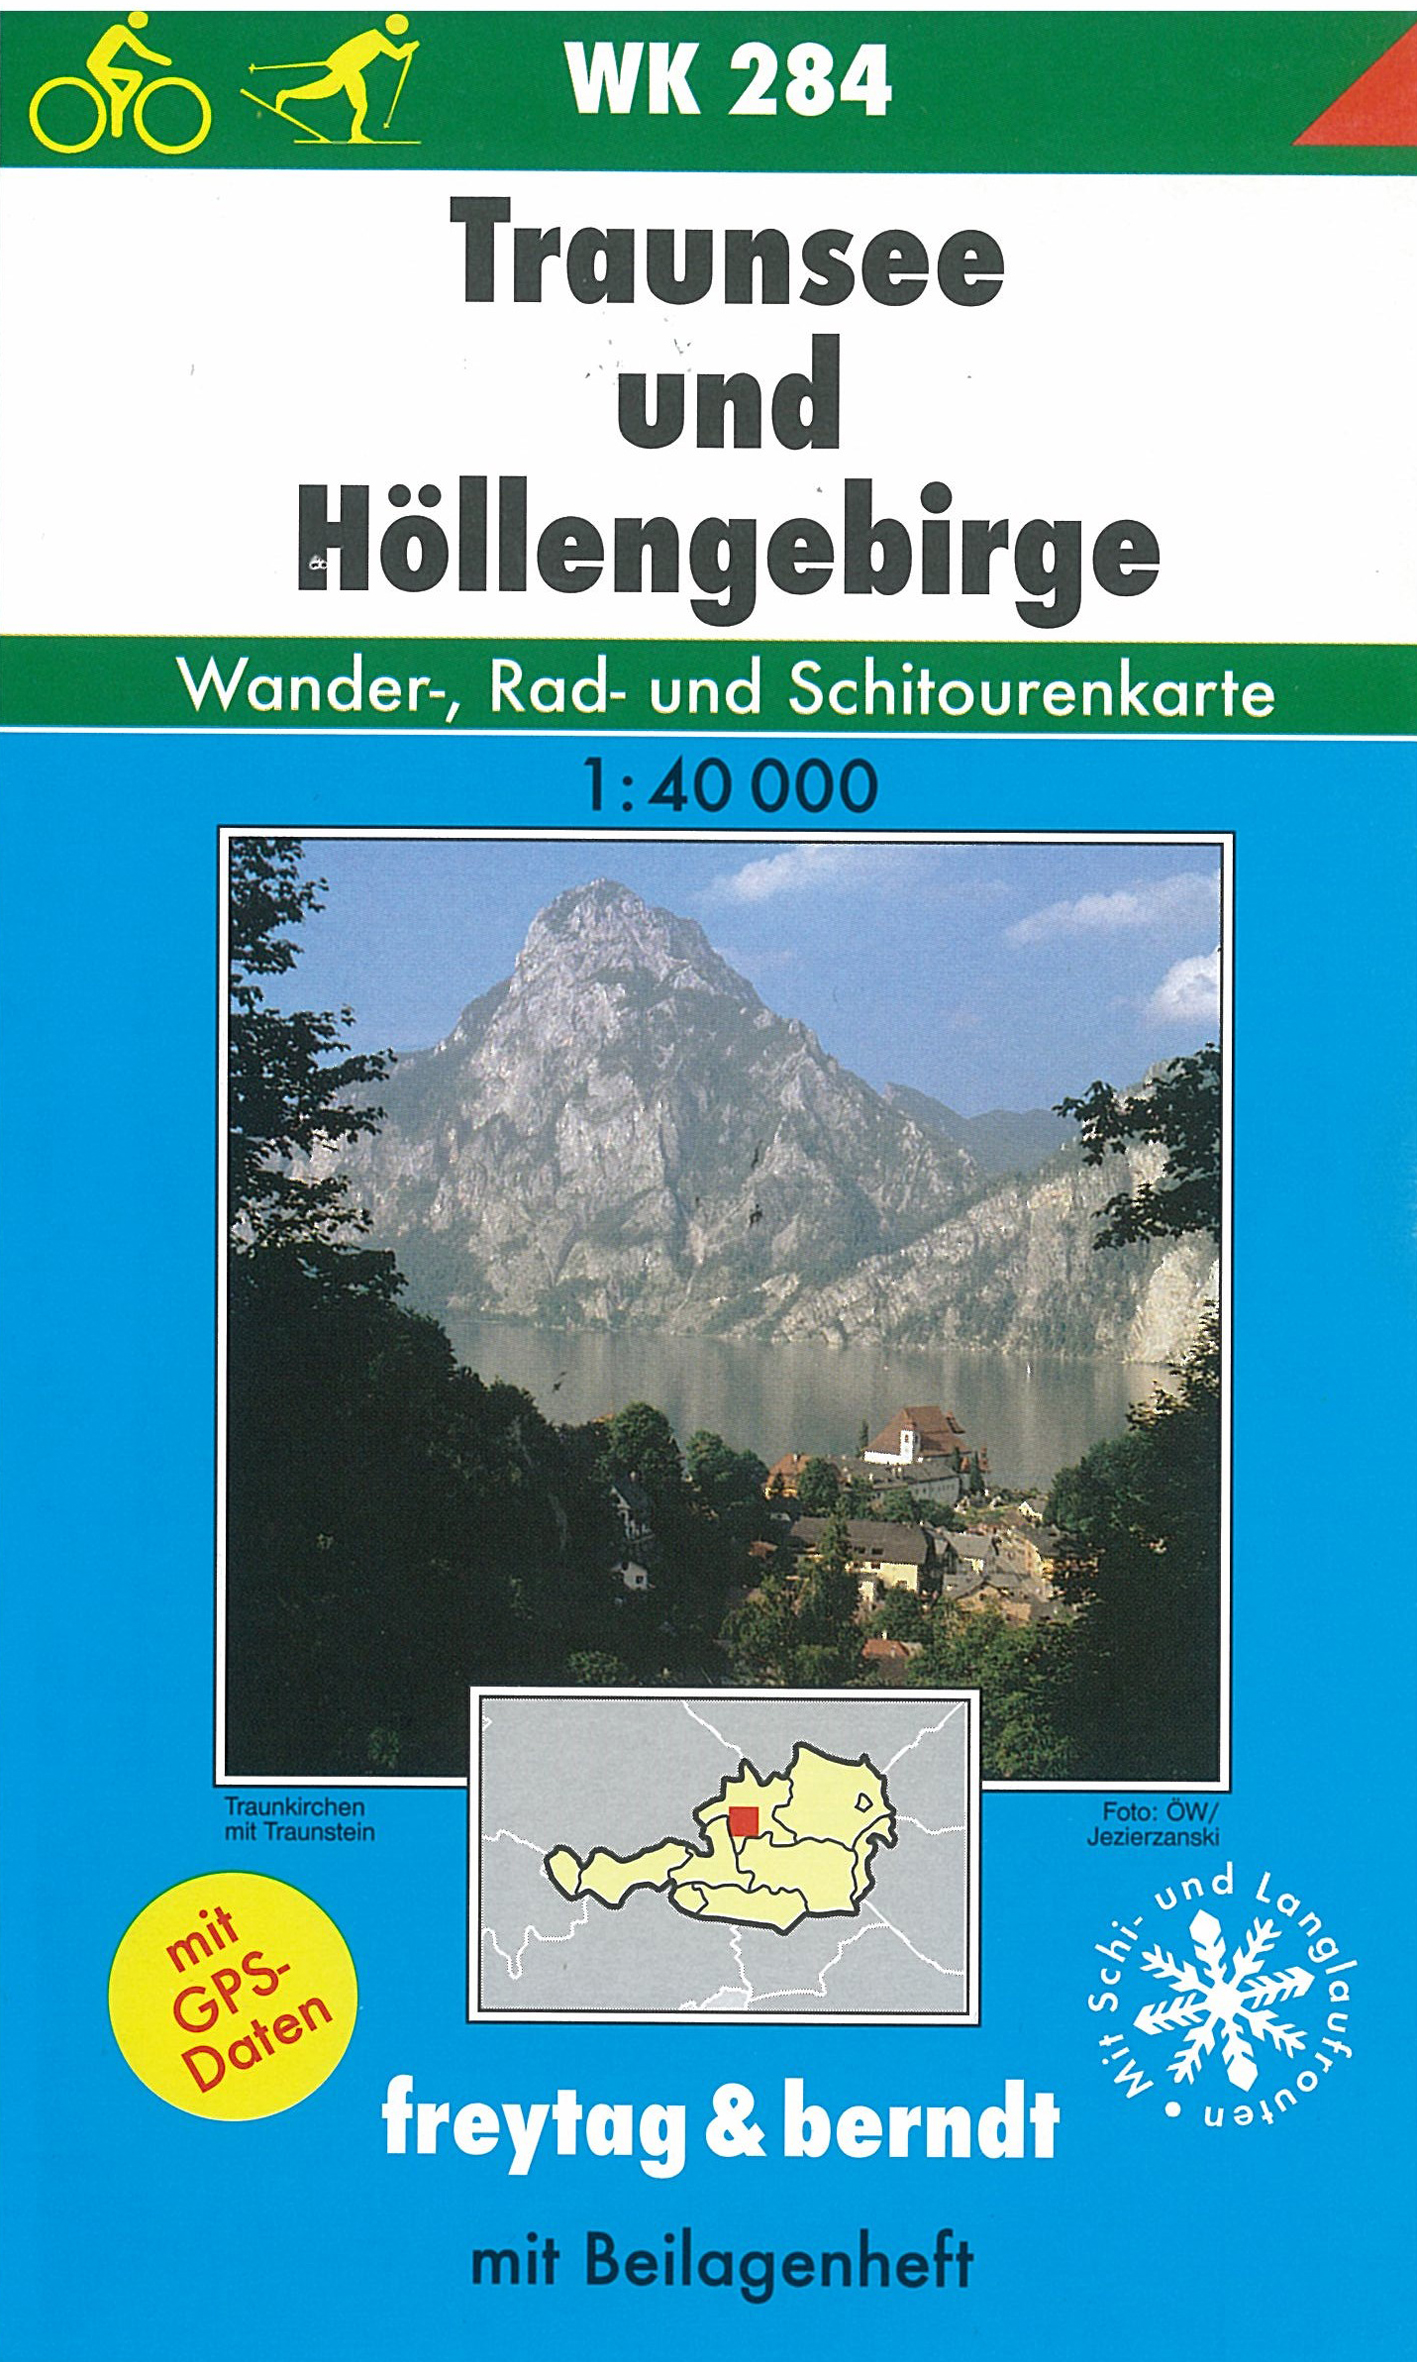 WK284 Traunsee und Höllengebirge 1:50t turistická mapa FB